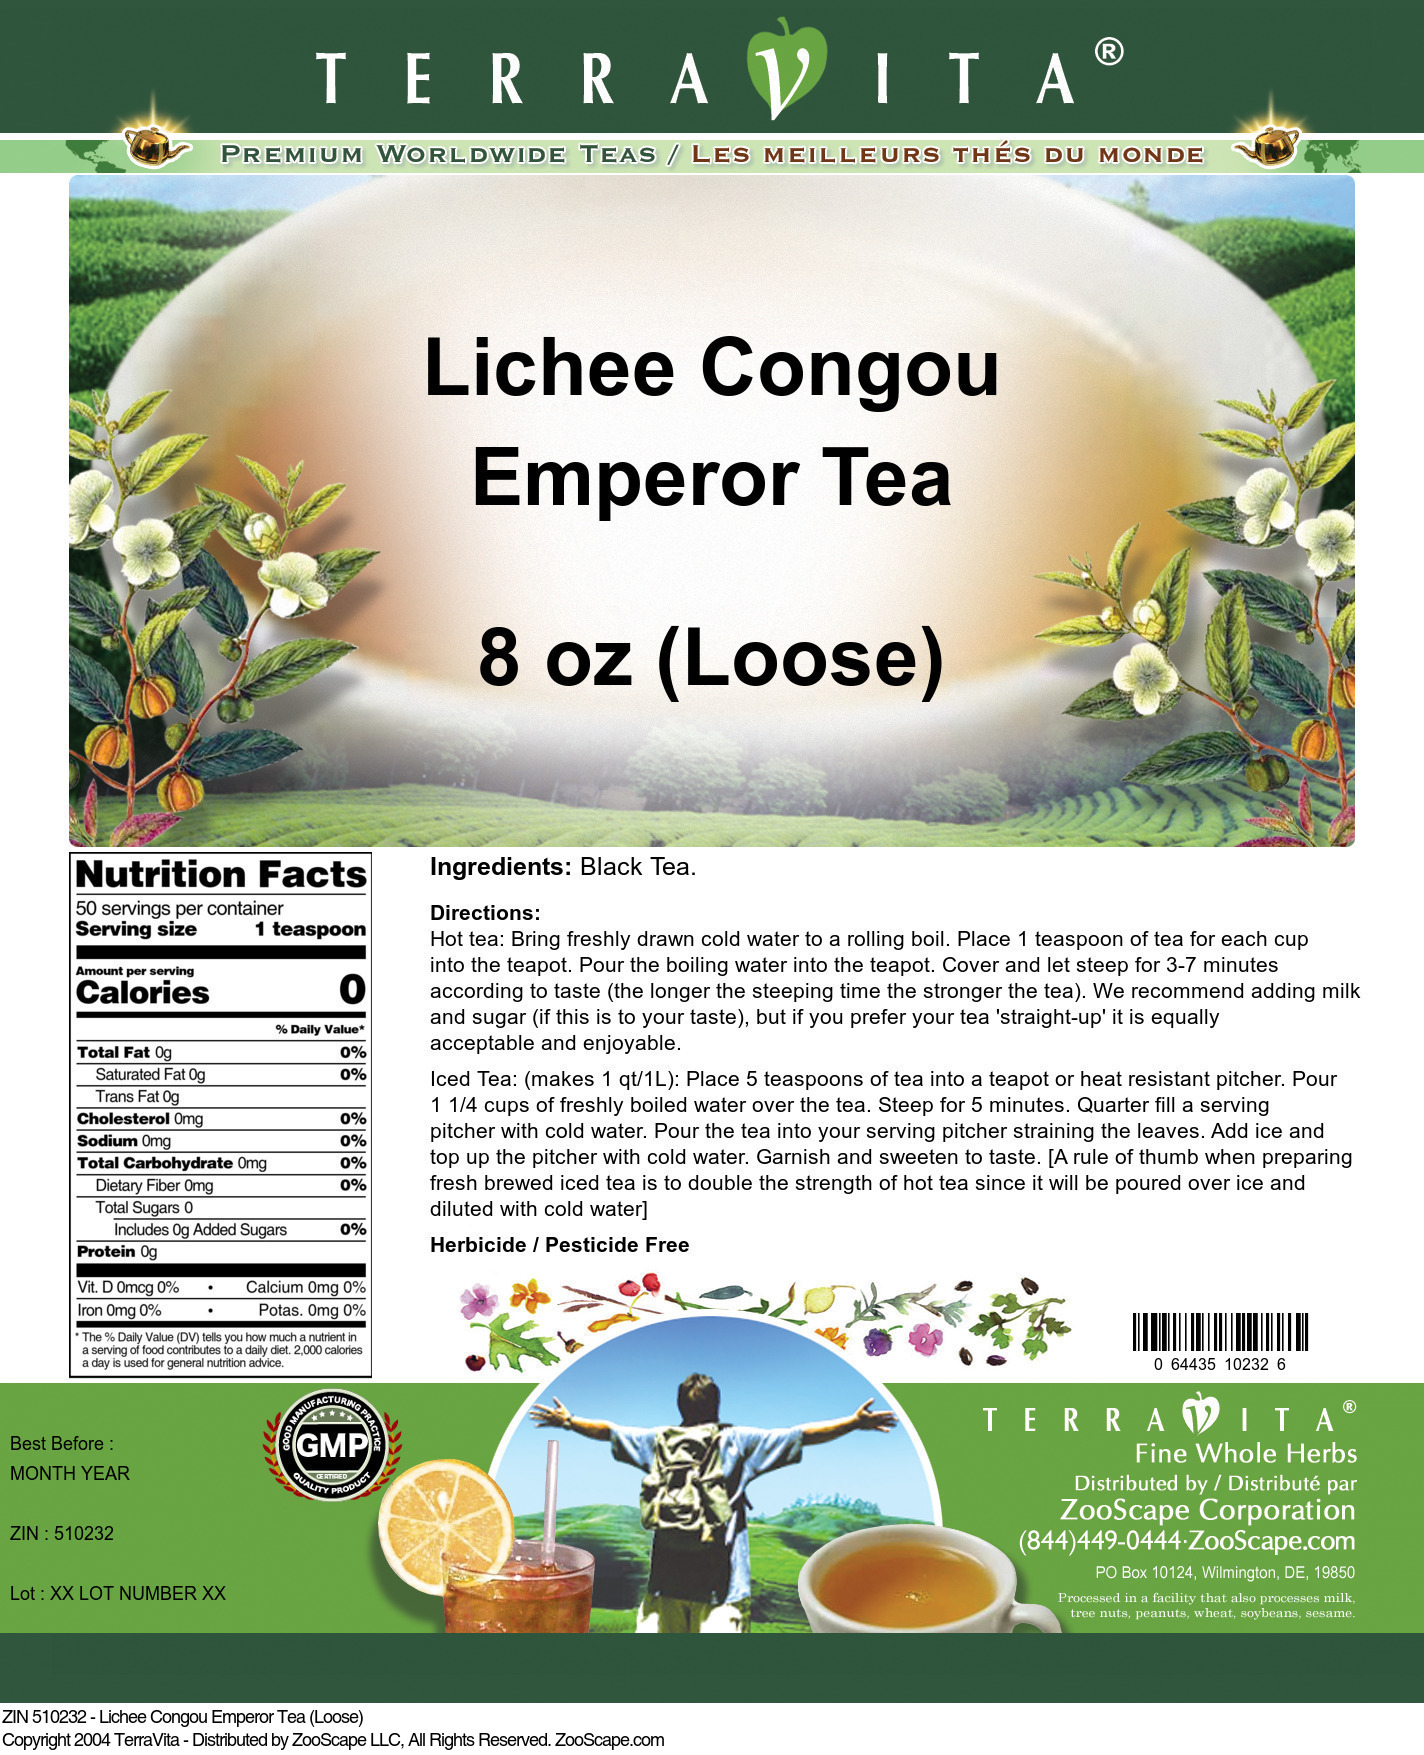 Lichee Congou Emperor Tea (Loose) - Label